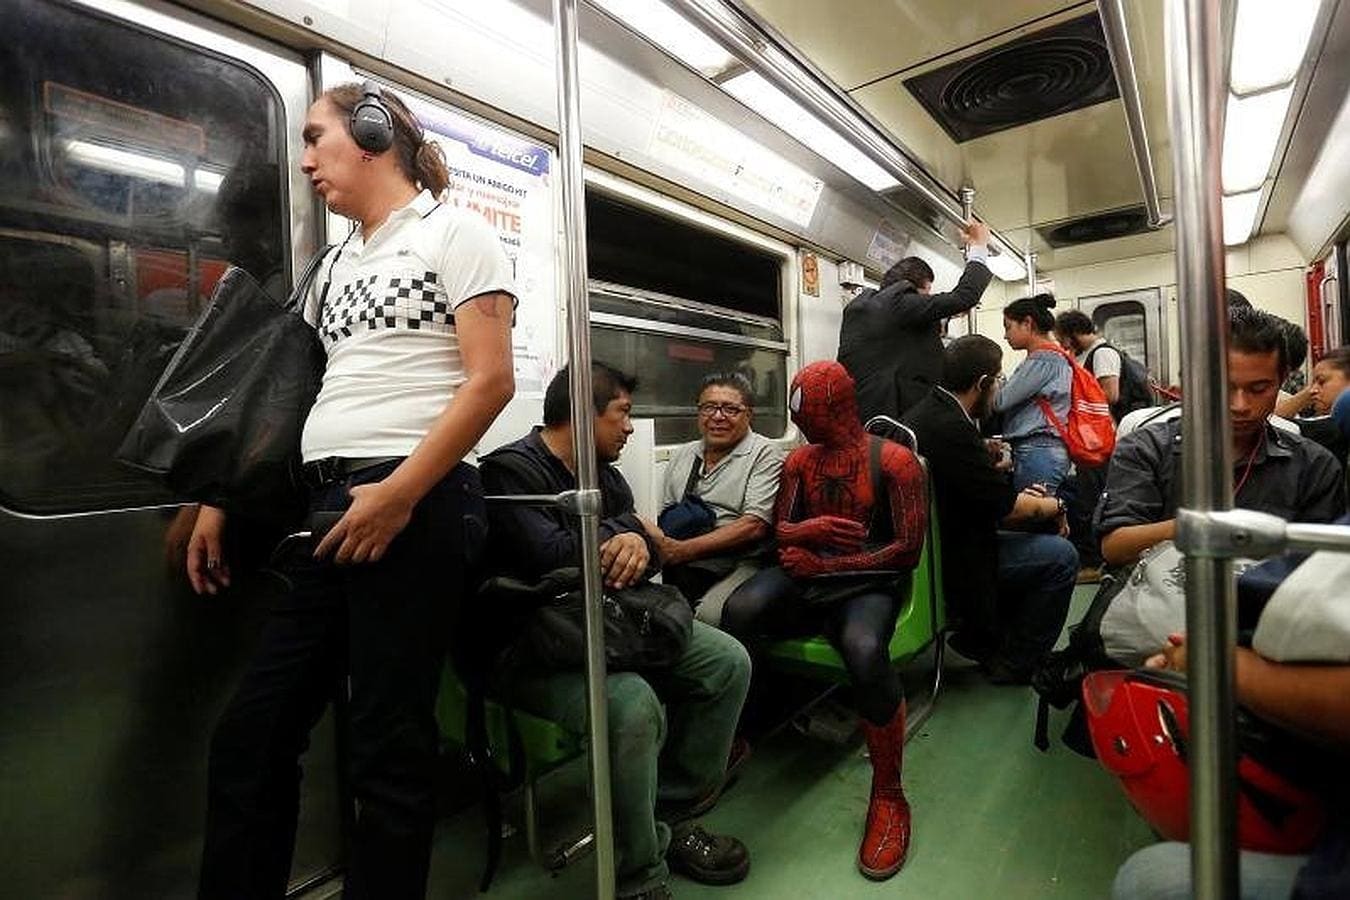 Viaja en metro con el traje de superhéroe, ante la mirada atónita de los demás pasajeros